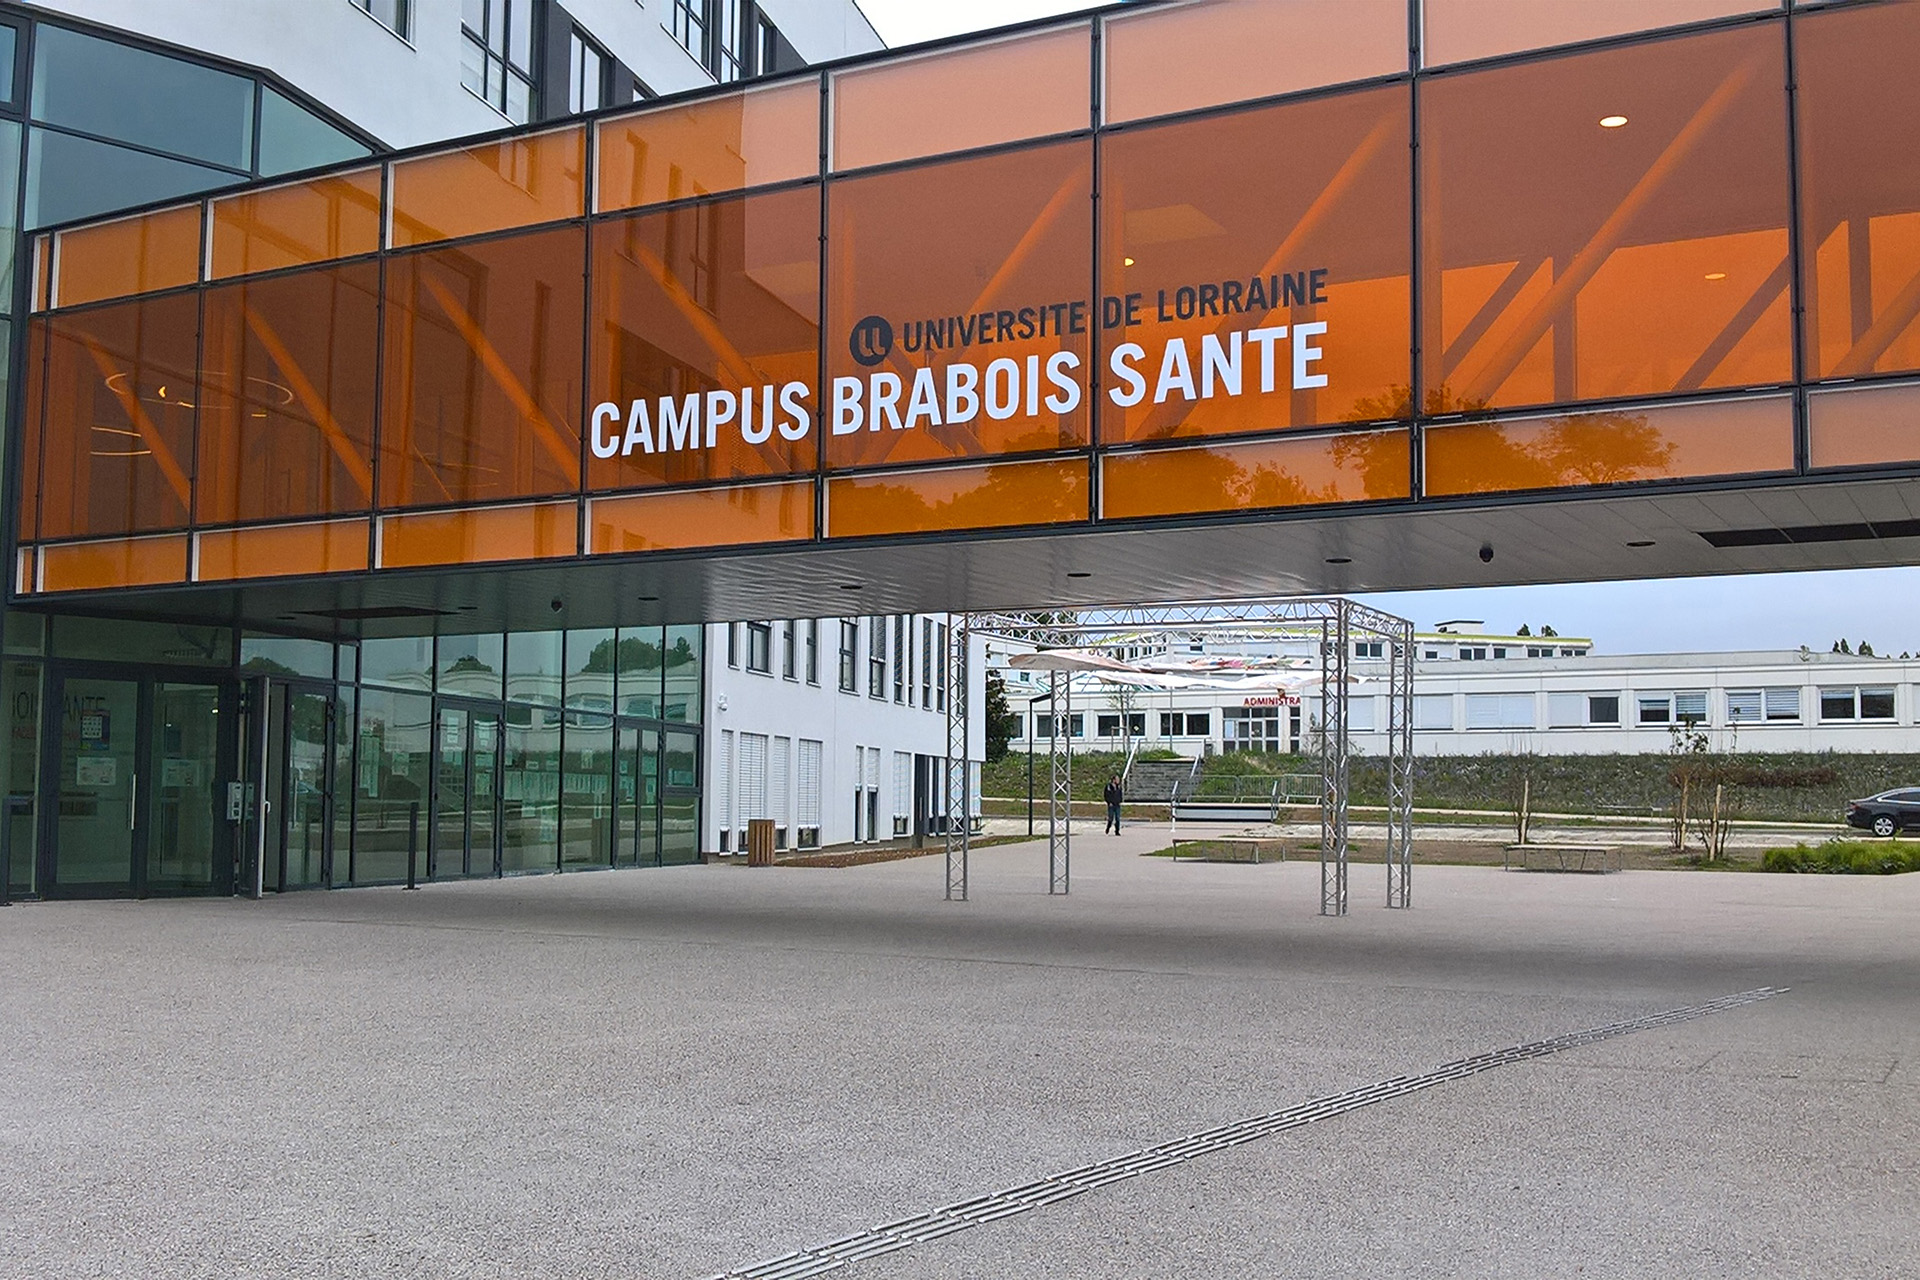 Campus Brabois Santé